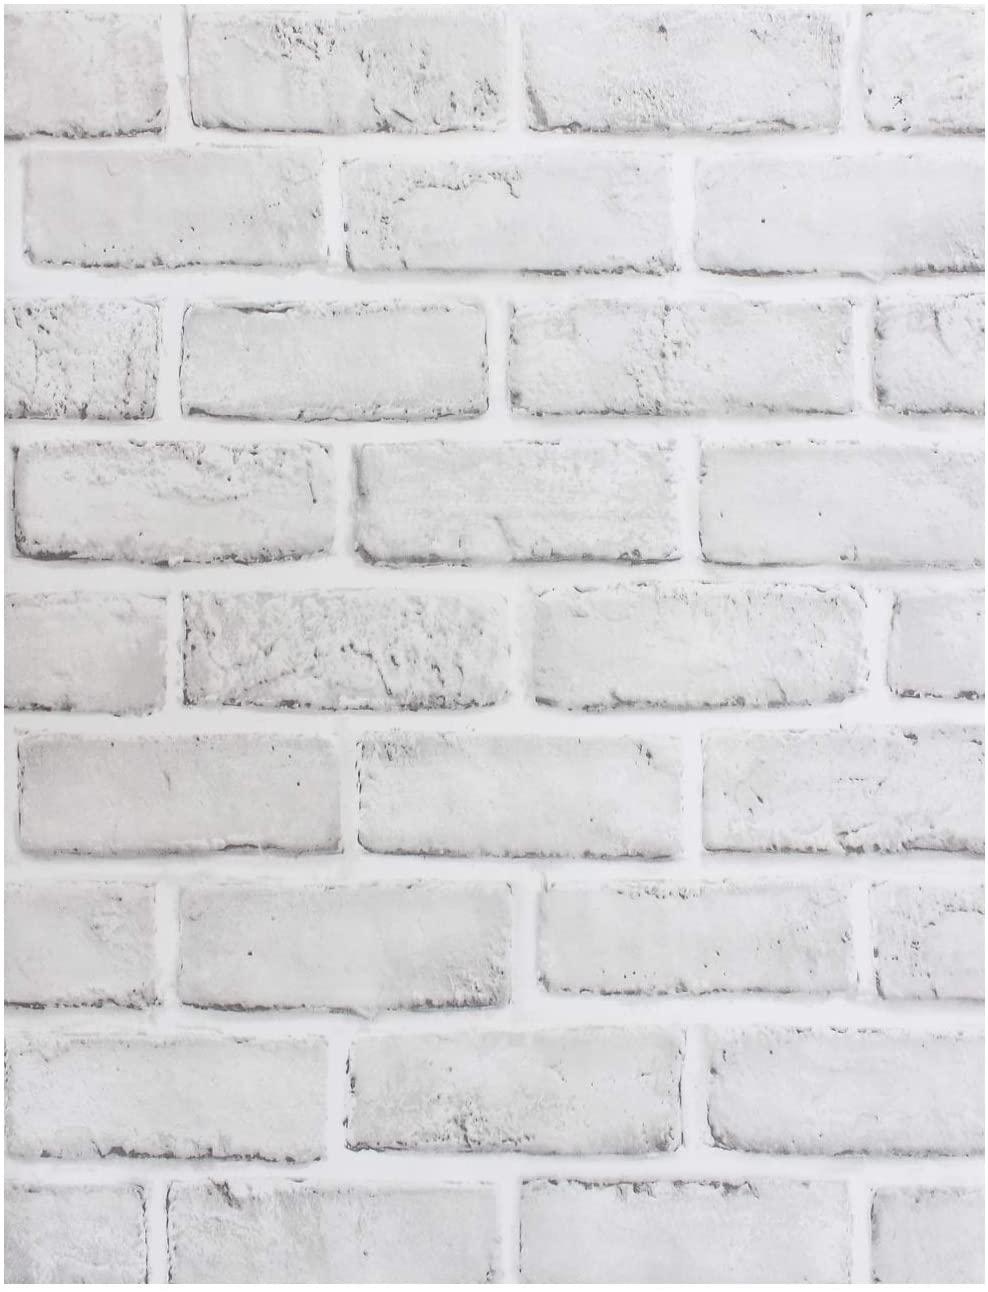 Изображение товара: Самоклеящаяся бумага HaoHome для стен из искусственного кирпича, цвет белый/серый, декоративные обои для ванной